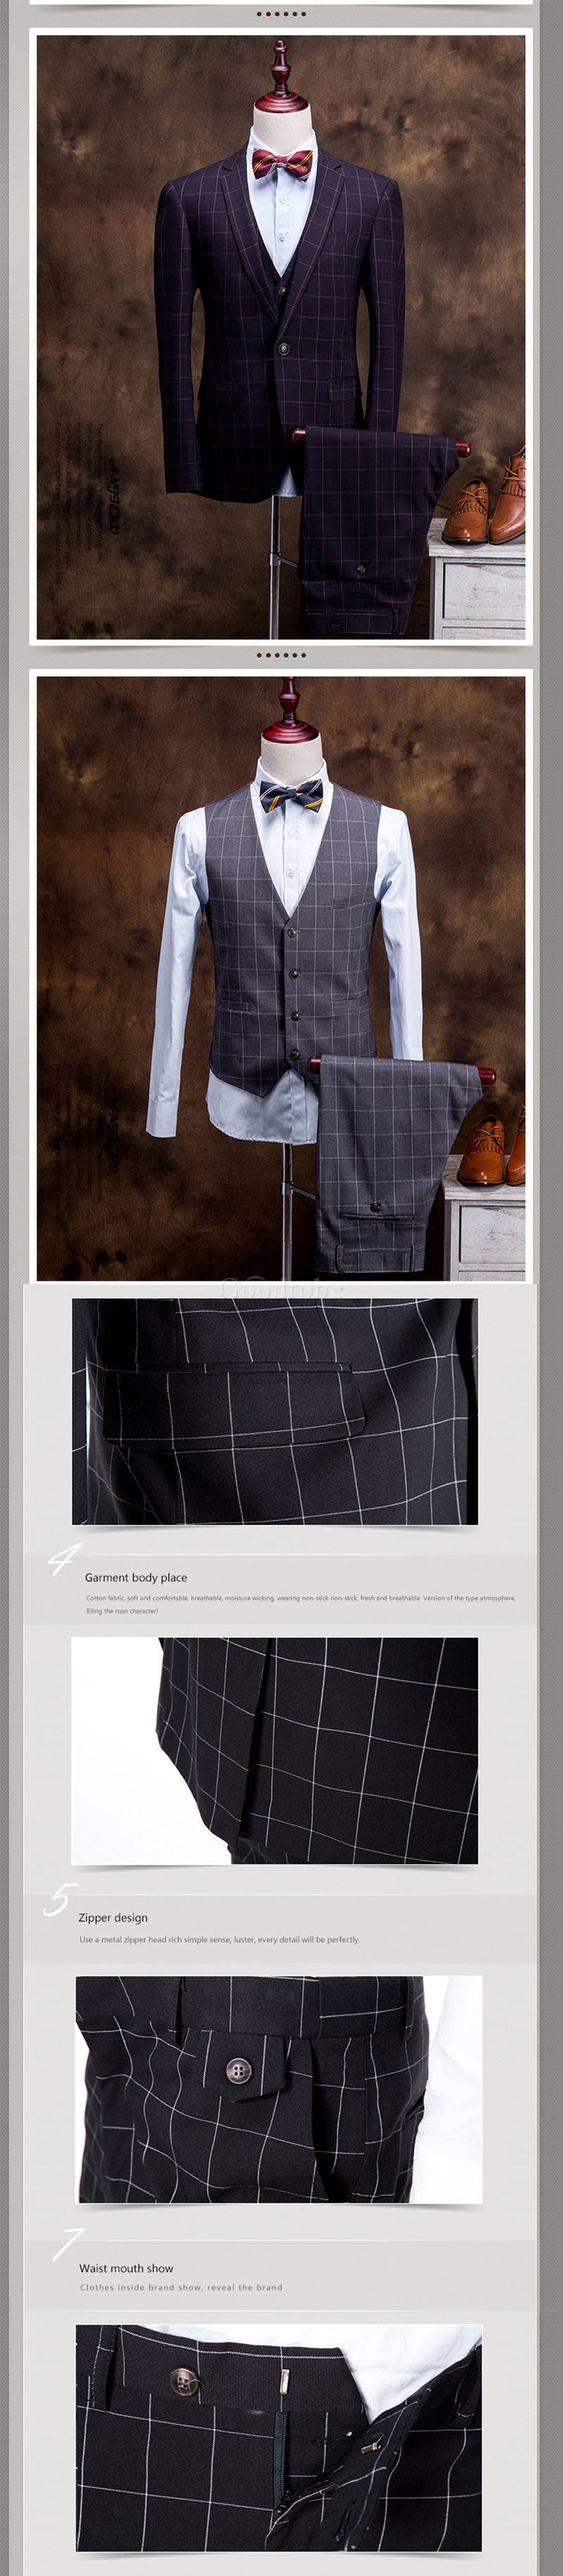 3 pièces veste + gilet + pantalon marque mariage hommes costumes décontracté